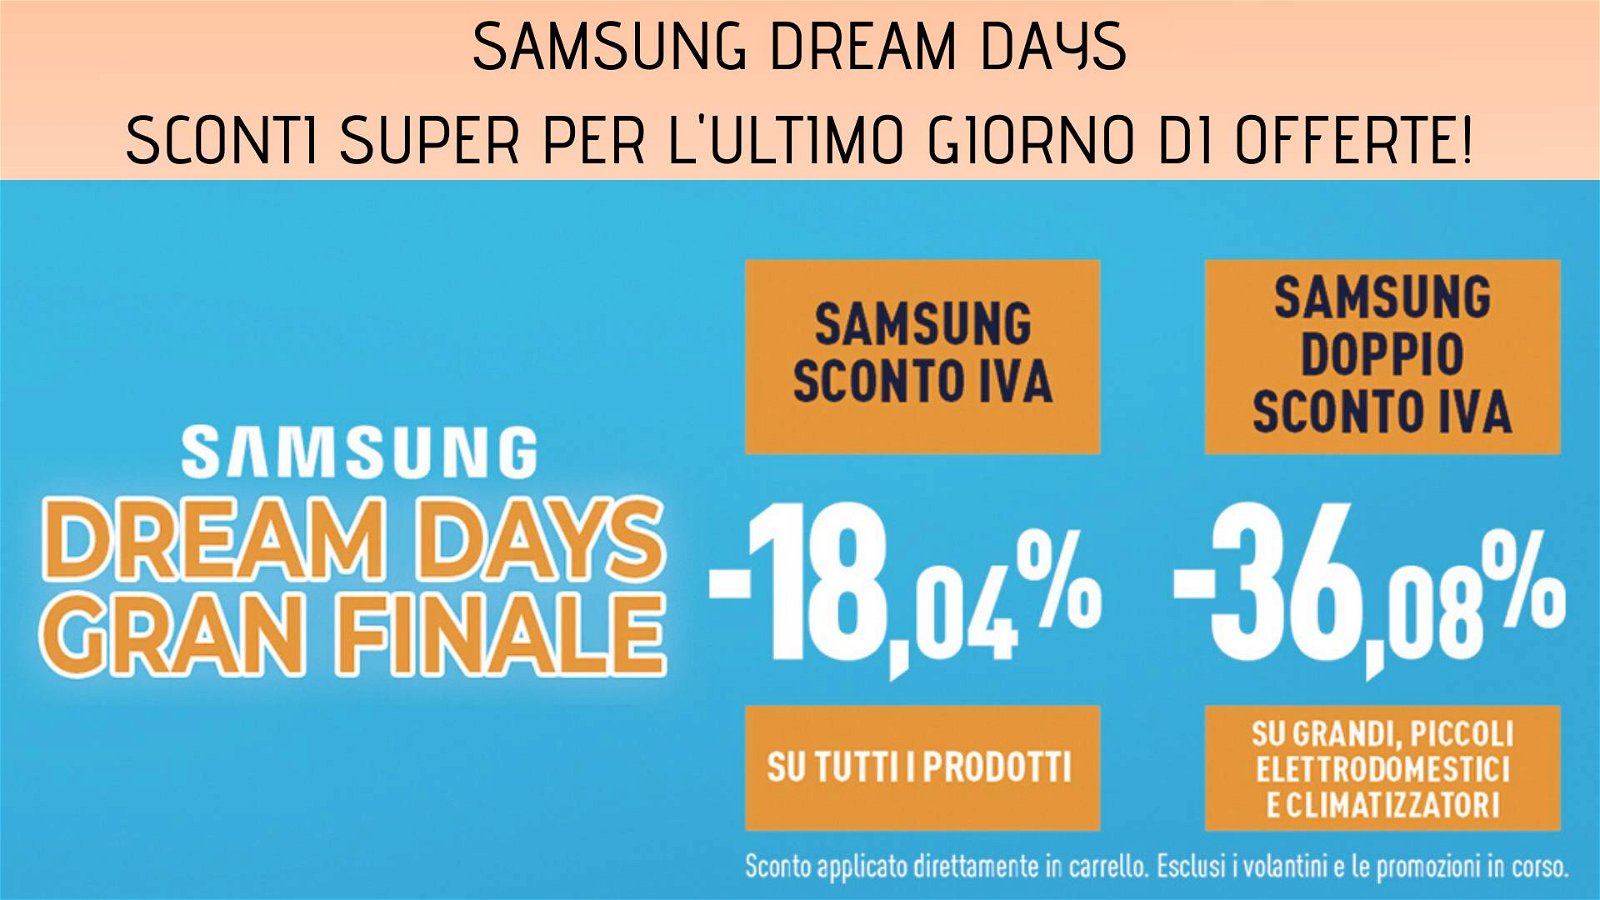 Immagine di Sconto IVA per l'ultimo giorno dei Dream Days Samsung, e per gli elettrodomestici raddoppia!